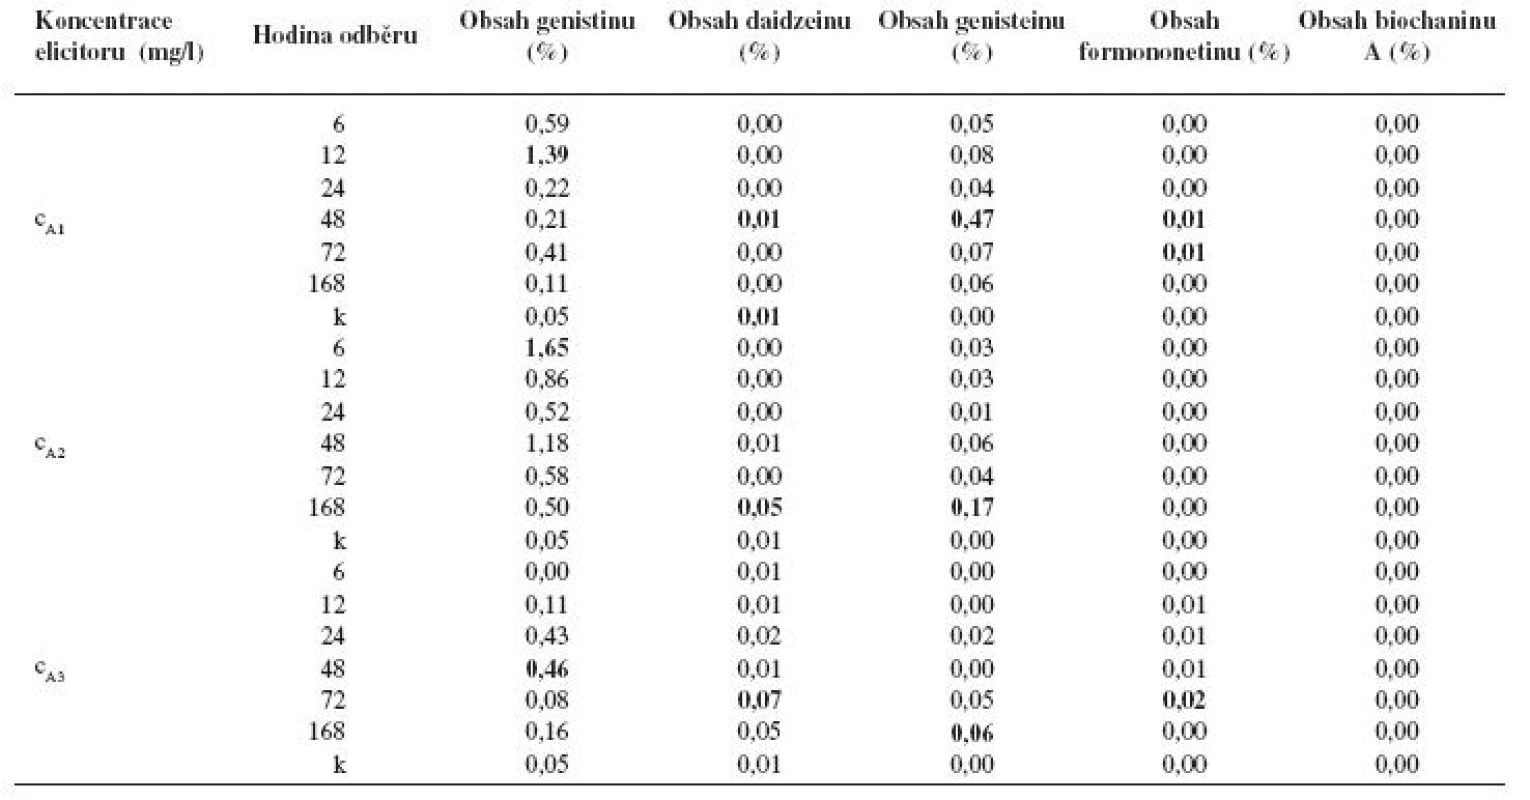 Obsah jednotlivých isoflavonoidů (%) v kalusové kultuře Genista tinctoria po elicitaci látkou A o různé koncentraci v závislosti na době odběru